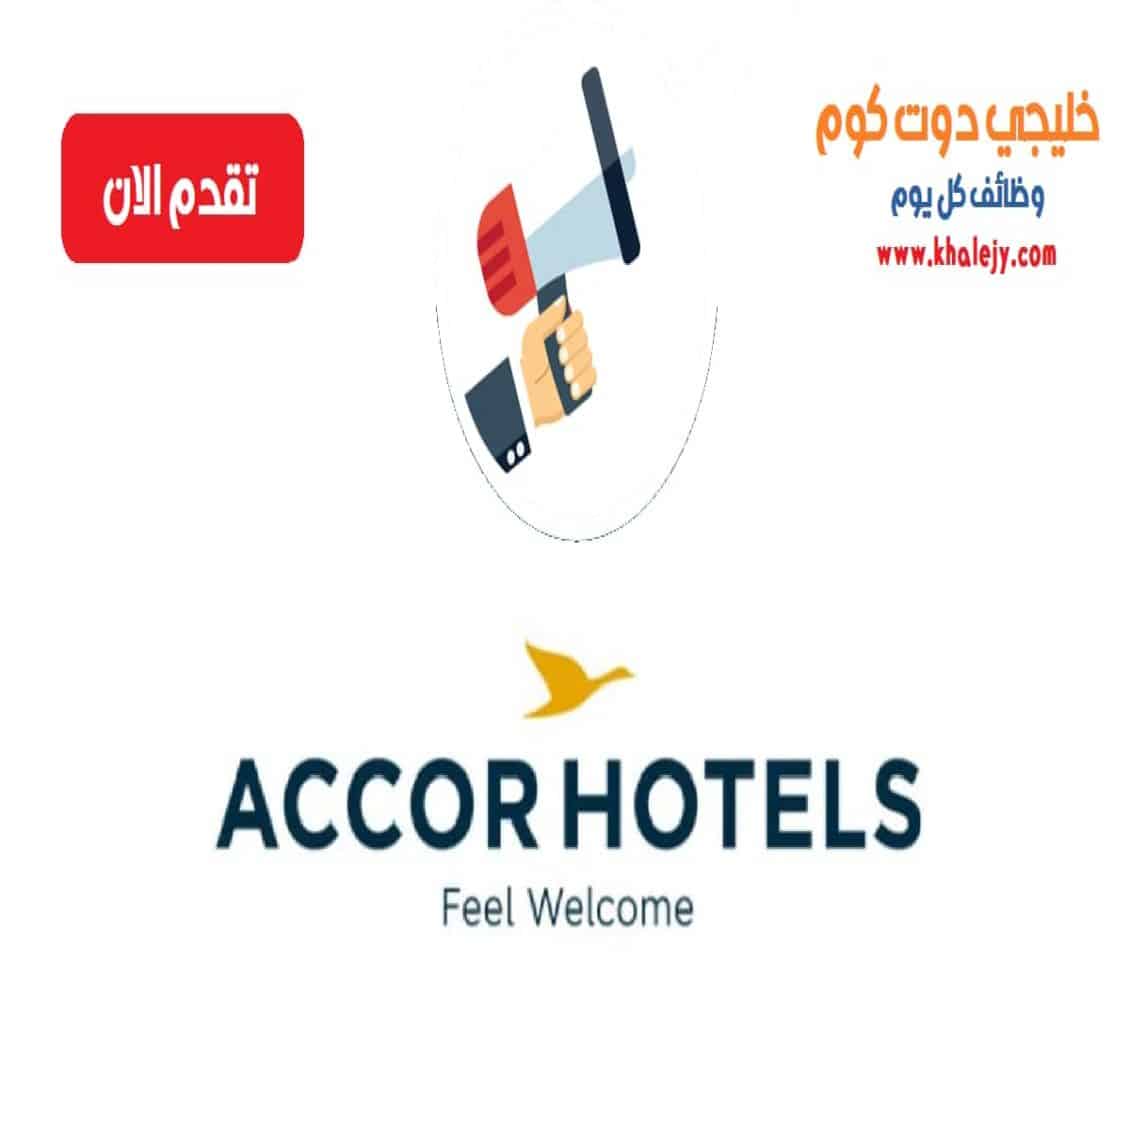 وظائف فندق اكور في قطر للمواطنين والاجانب